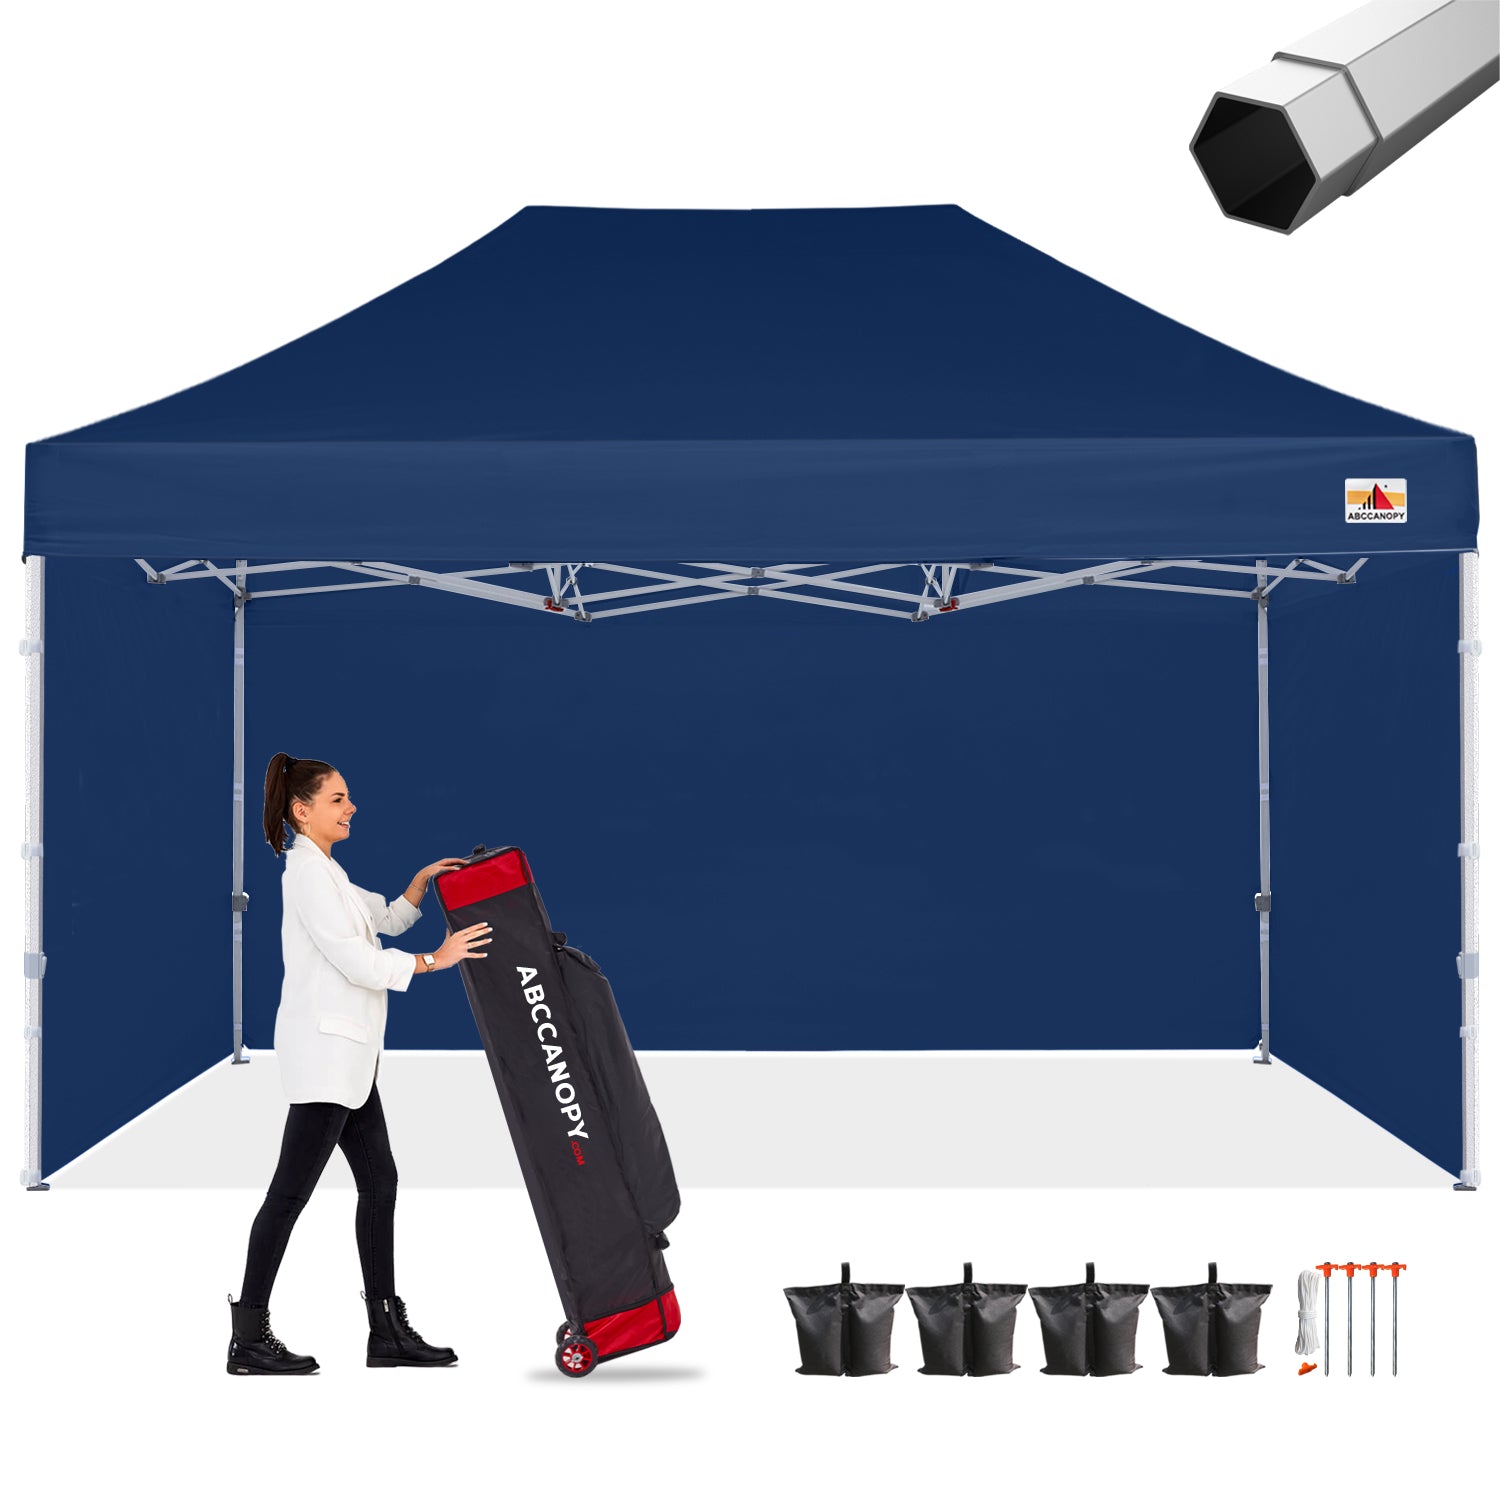 S2 Premium Heavy Duty 10x10/10x15/10x20 Canopy Tent with Sidewalls